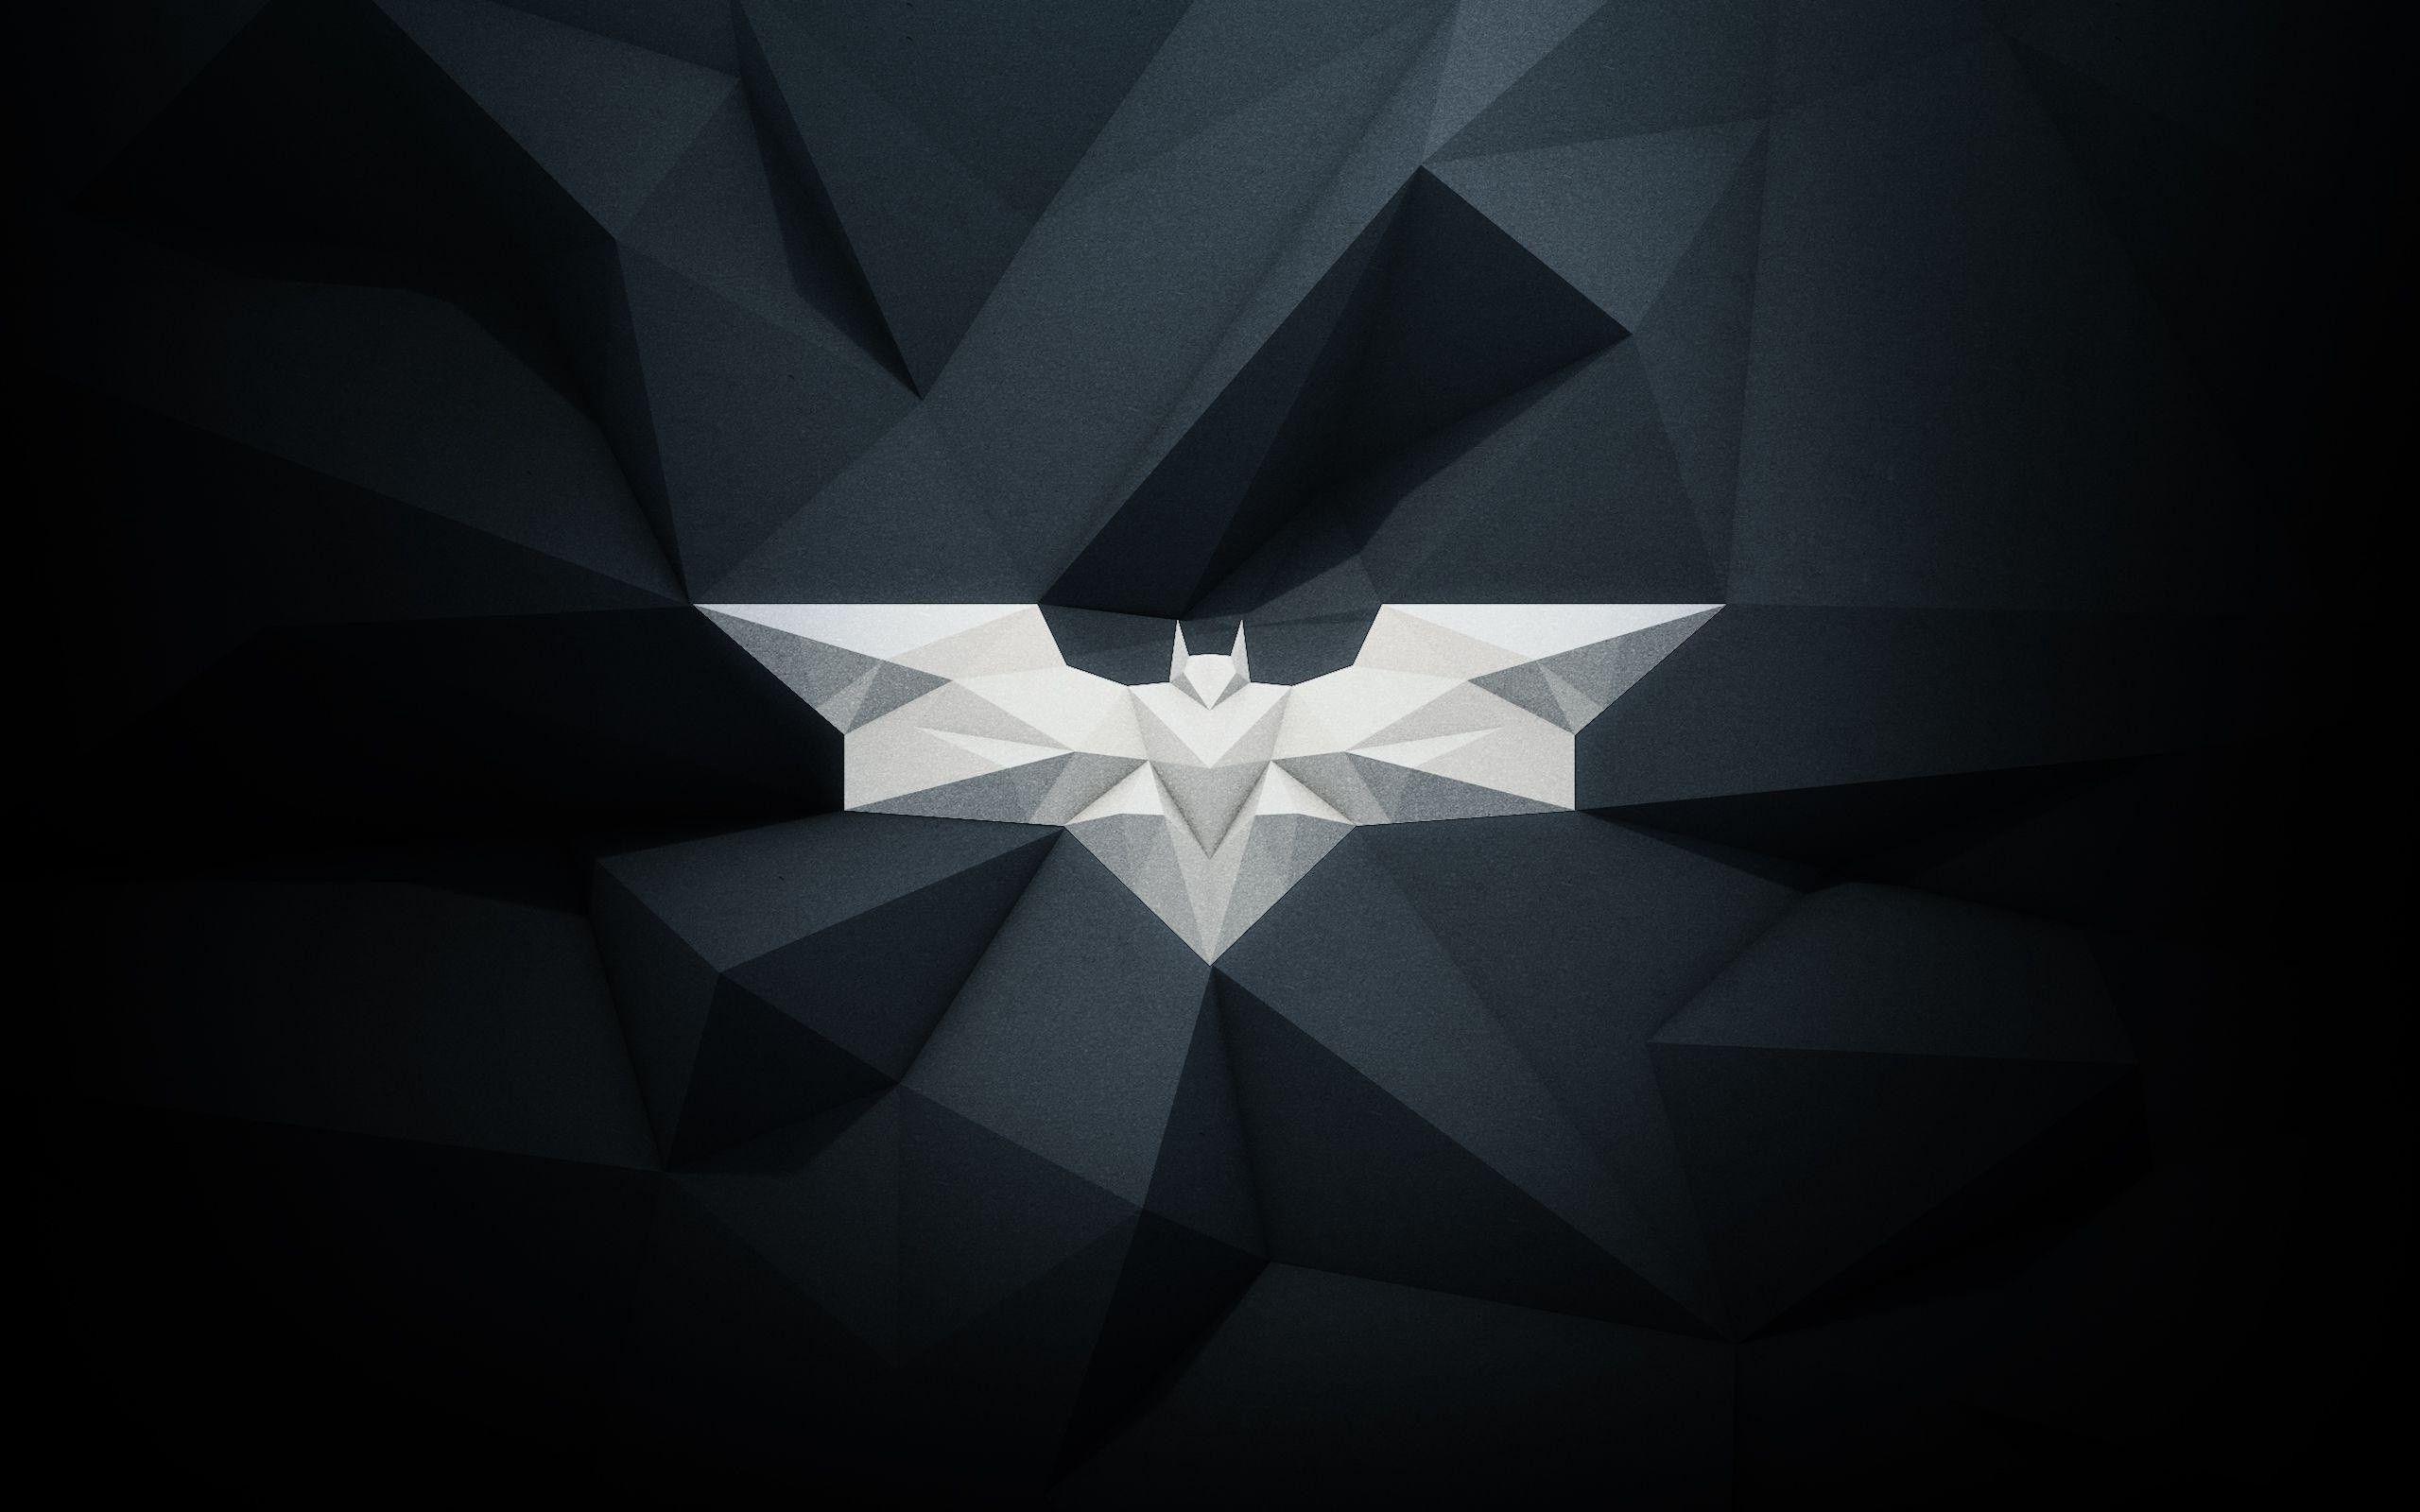 2560 x 1600 · jpeg - Batman Logo Wallpapers - Wallpaper Cave